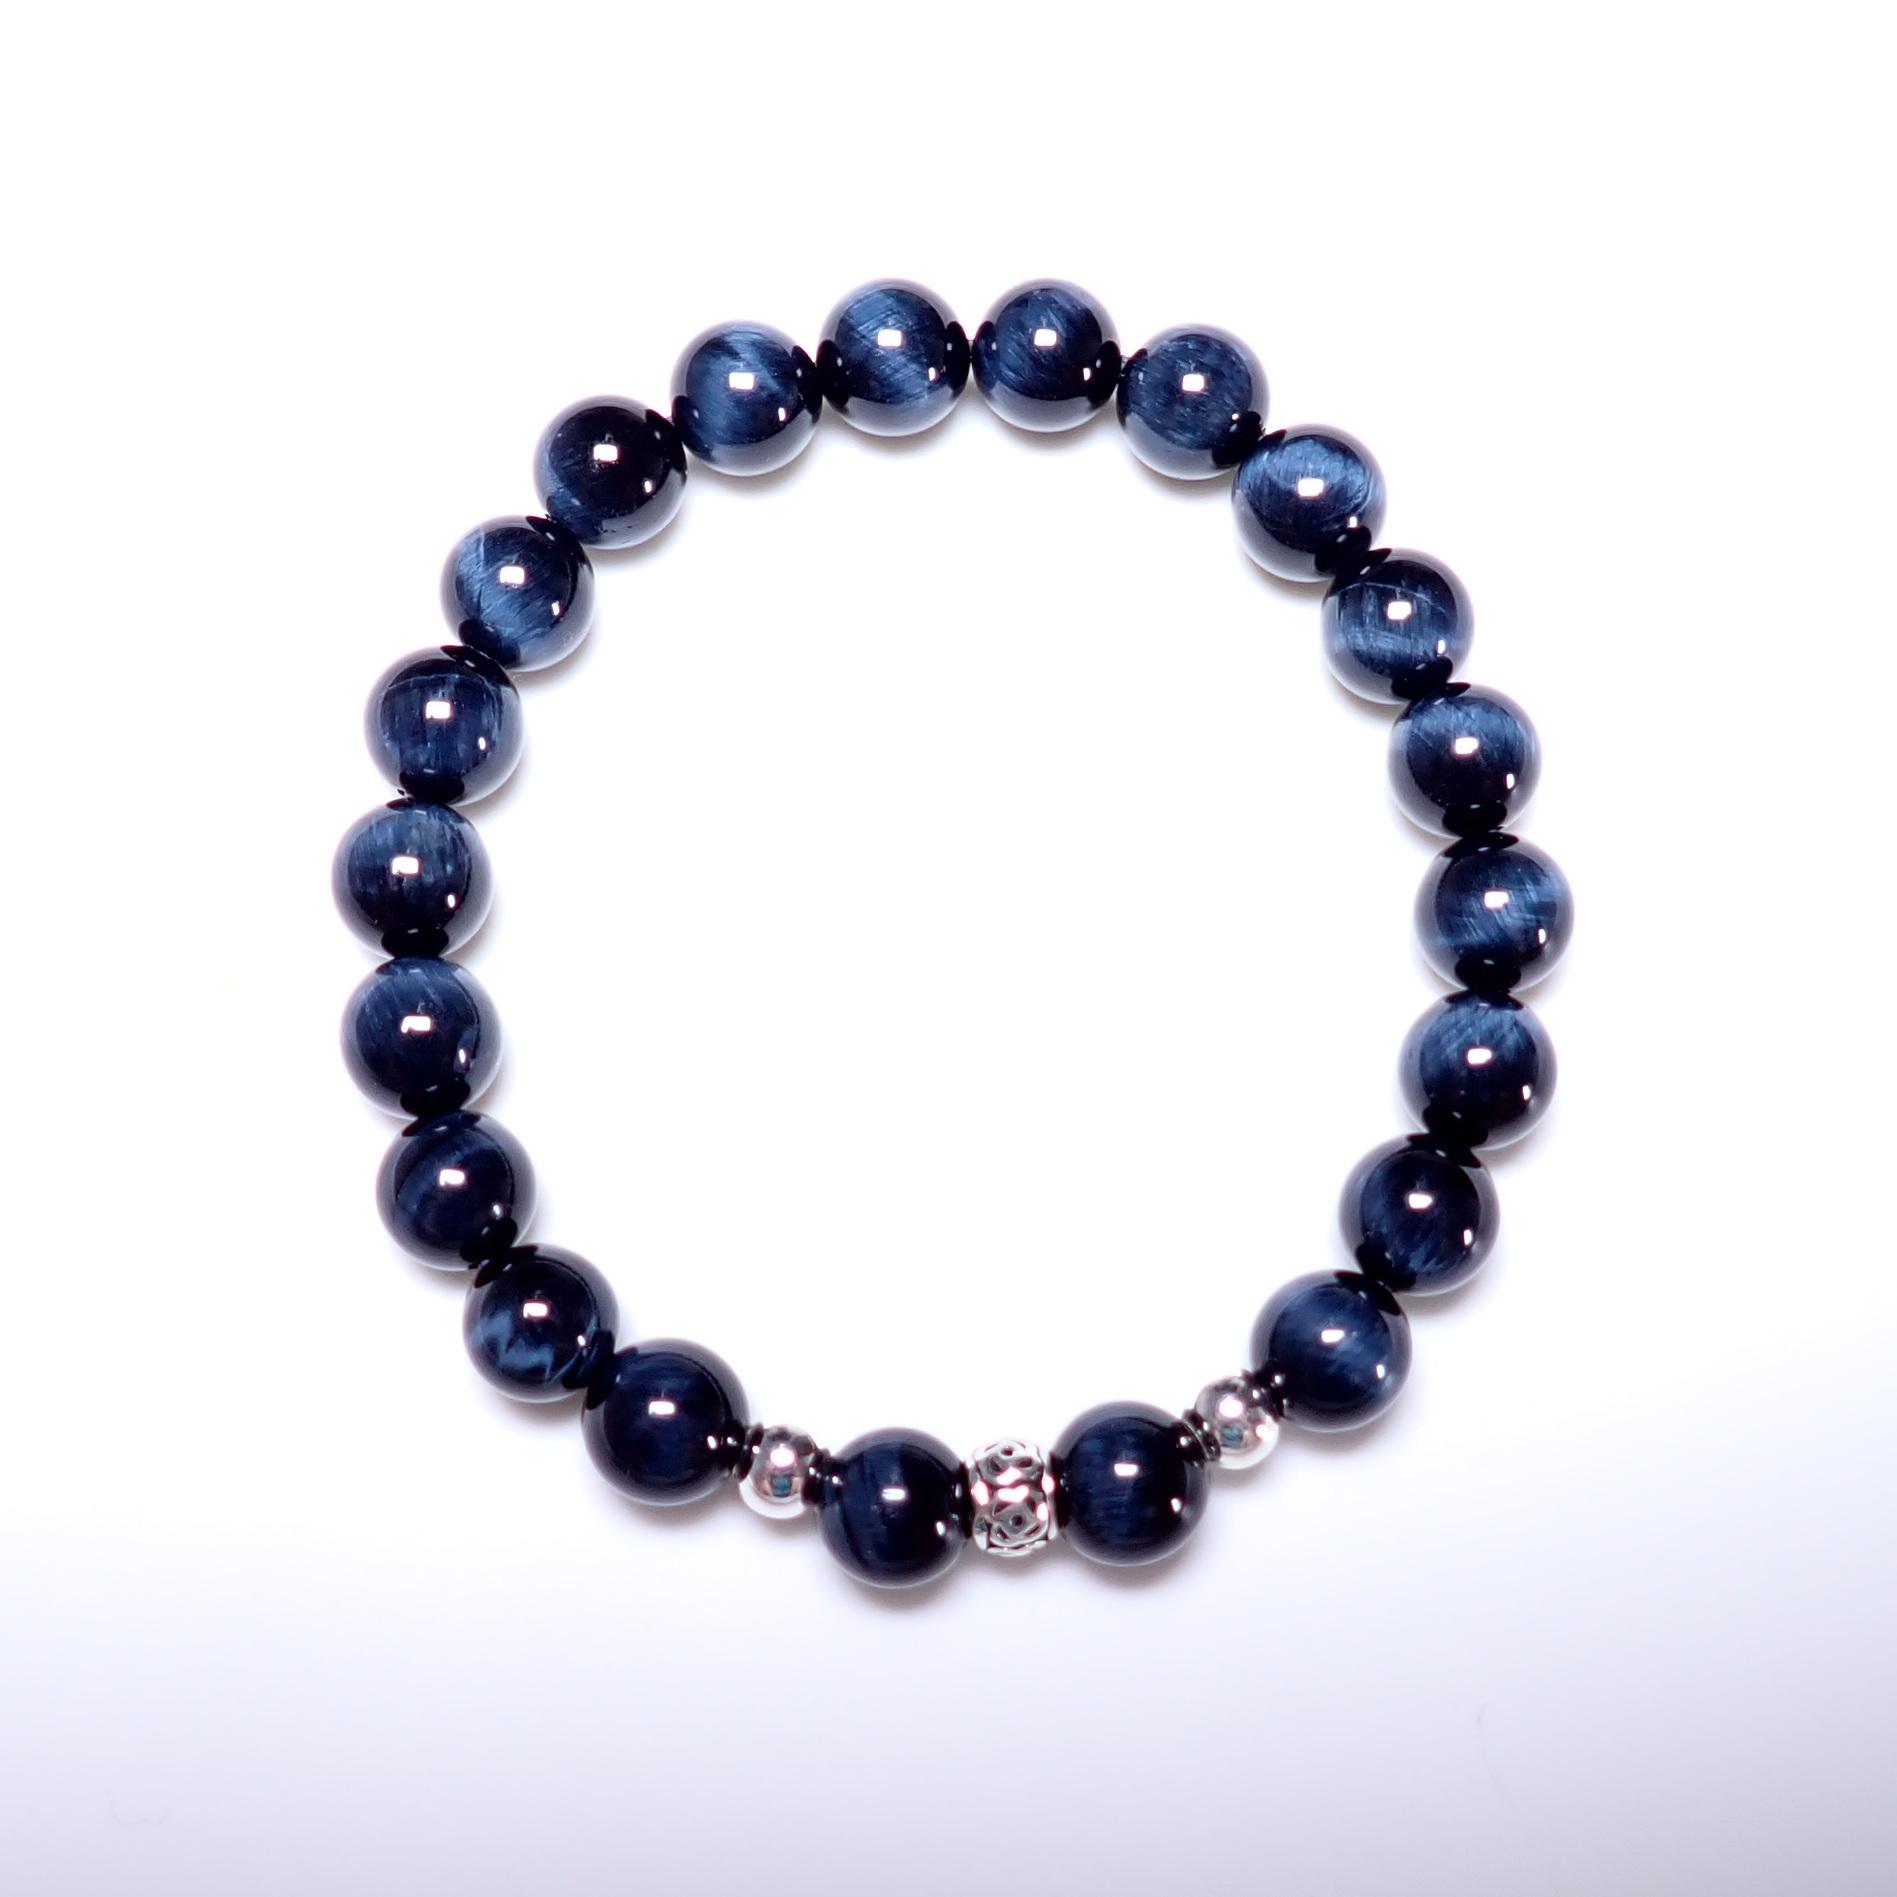 閃電藍虎眼手珠8mm(可選擇銀珠) | 台灣設計天然石純銀k金手作輕珠寶飾品